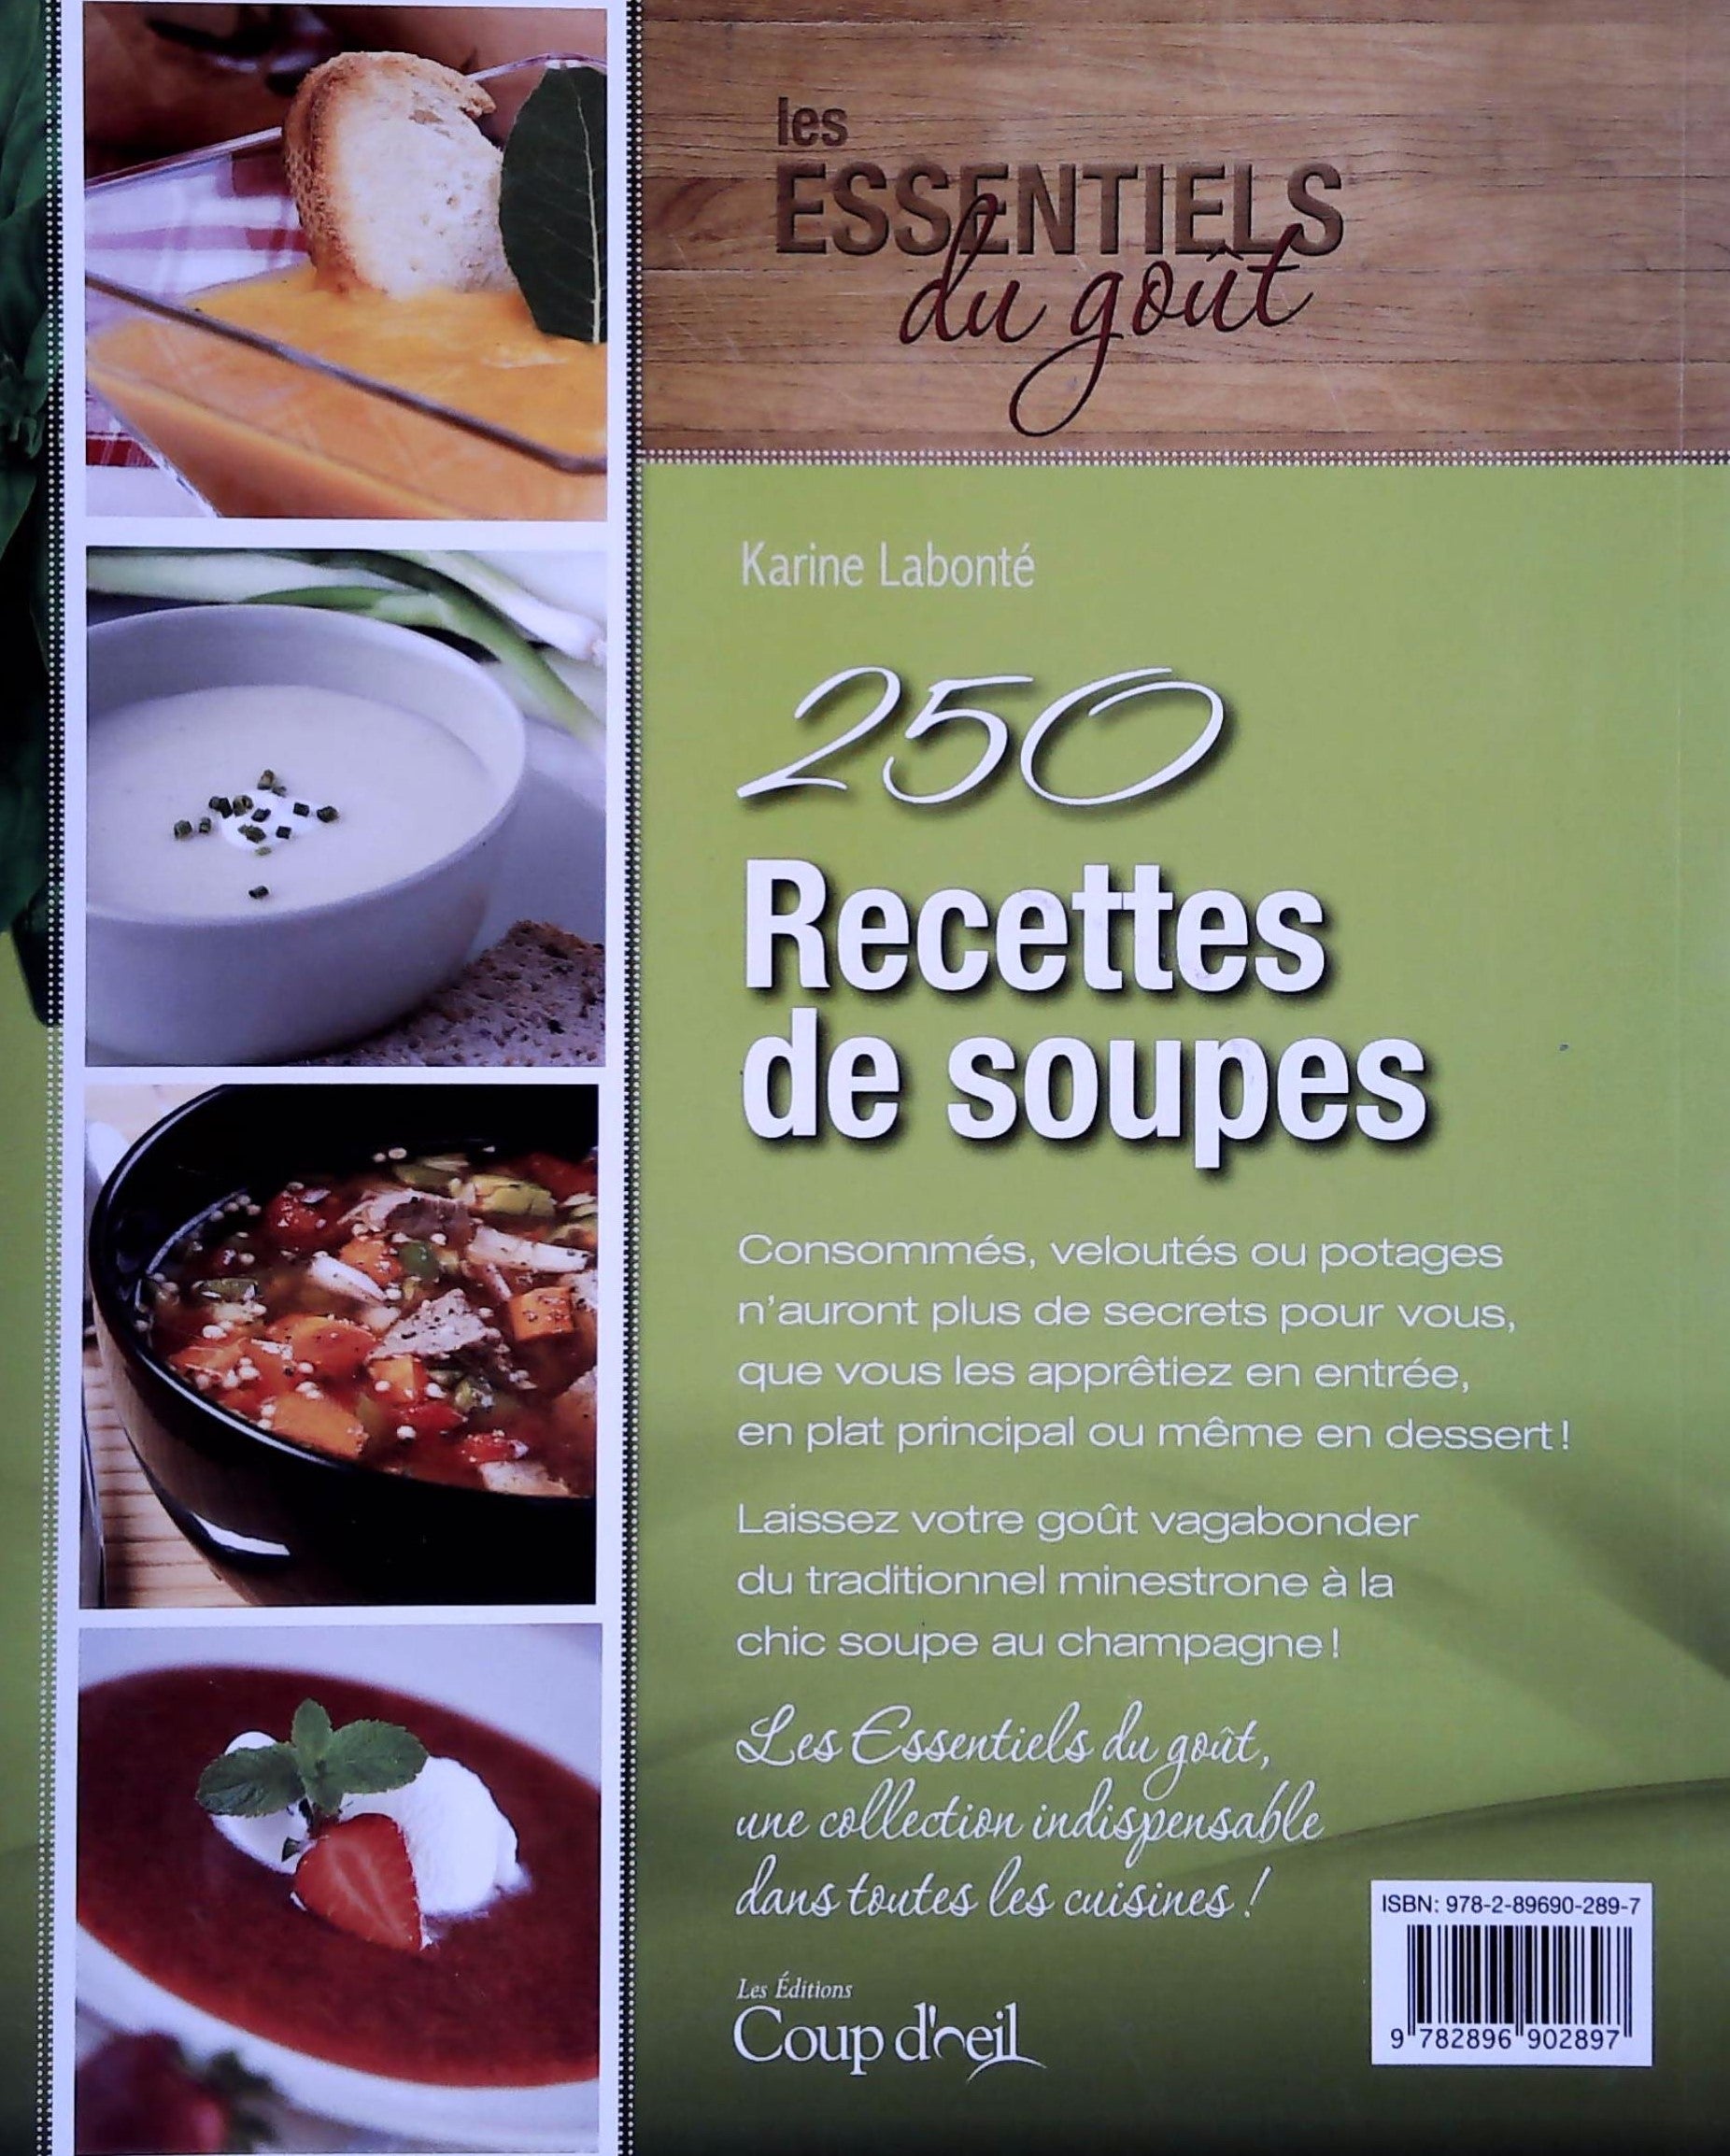 250 Recettes de soupes : Des vitamines et du goût! (Karine Labonté)